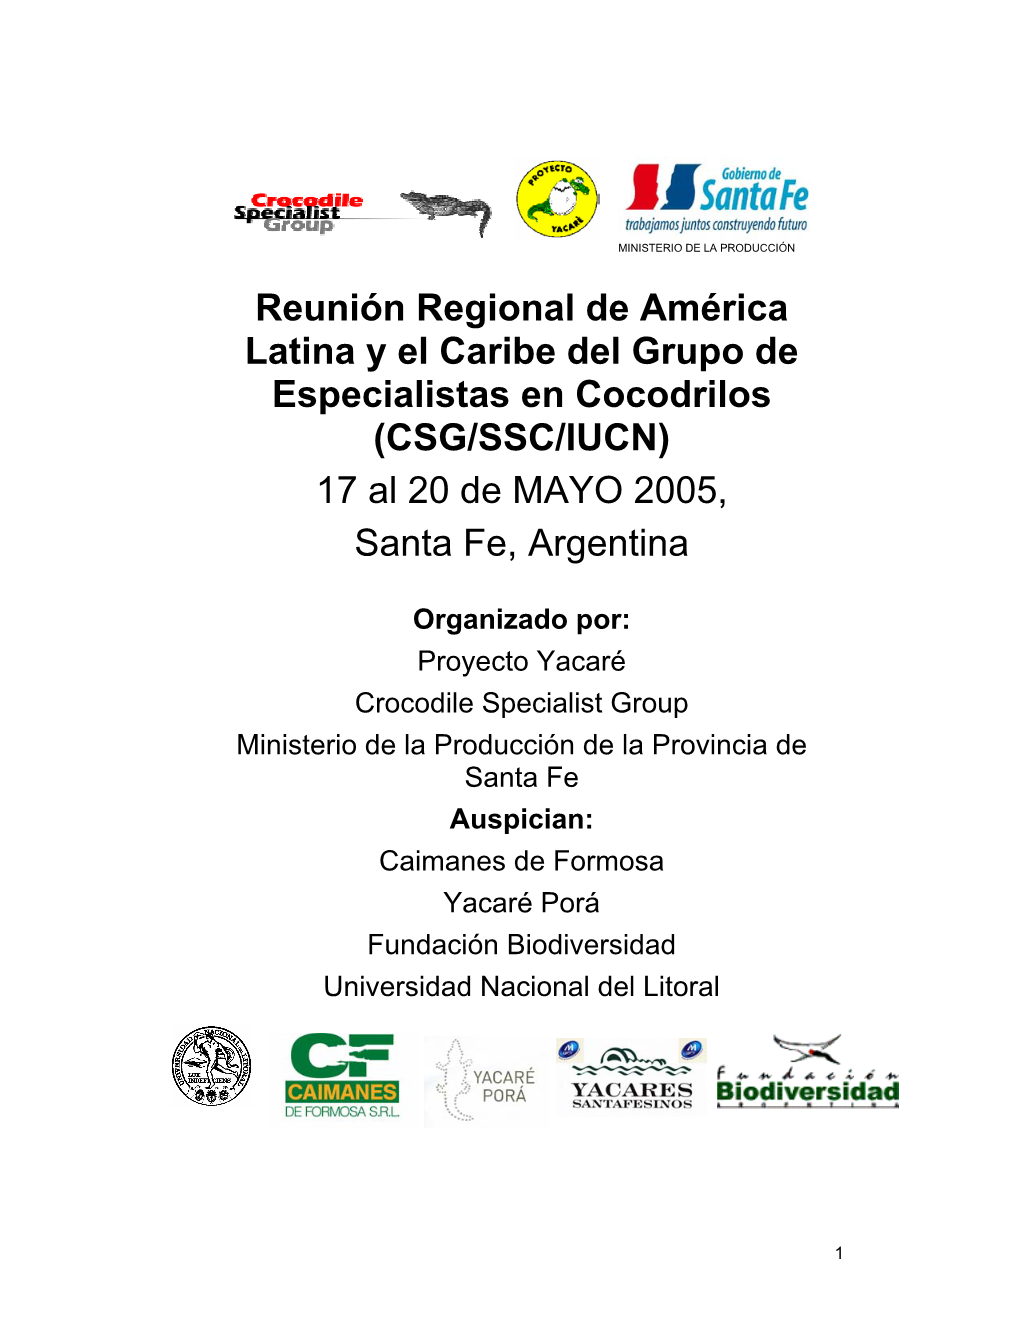 (CSG/SSC/IUCN) 17 Al 20 De MAYO 2005, Santa Fe, Argentina